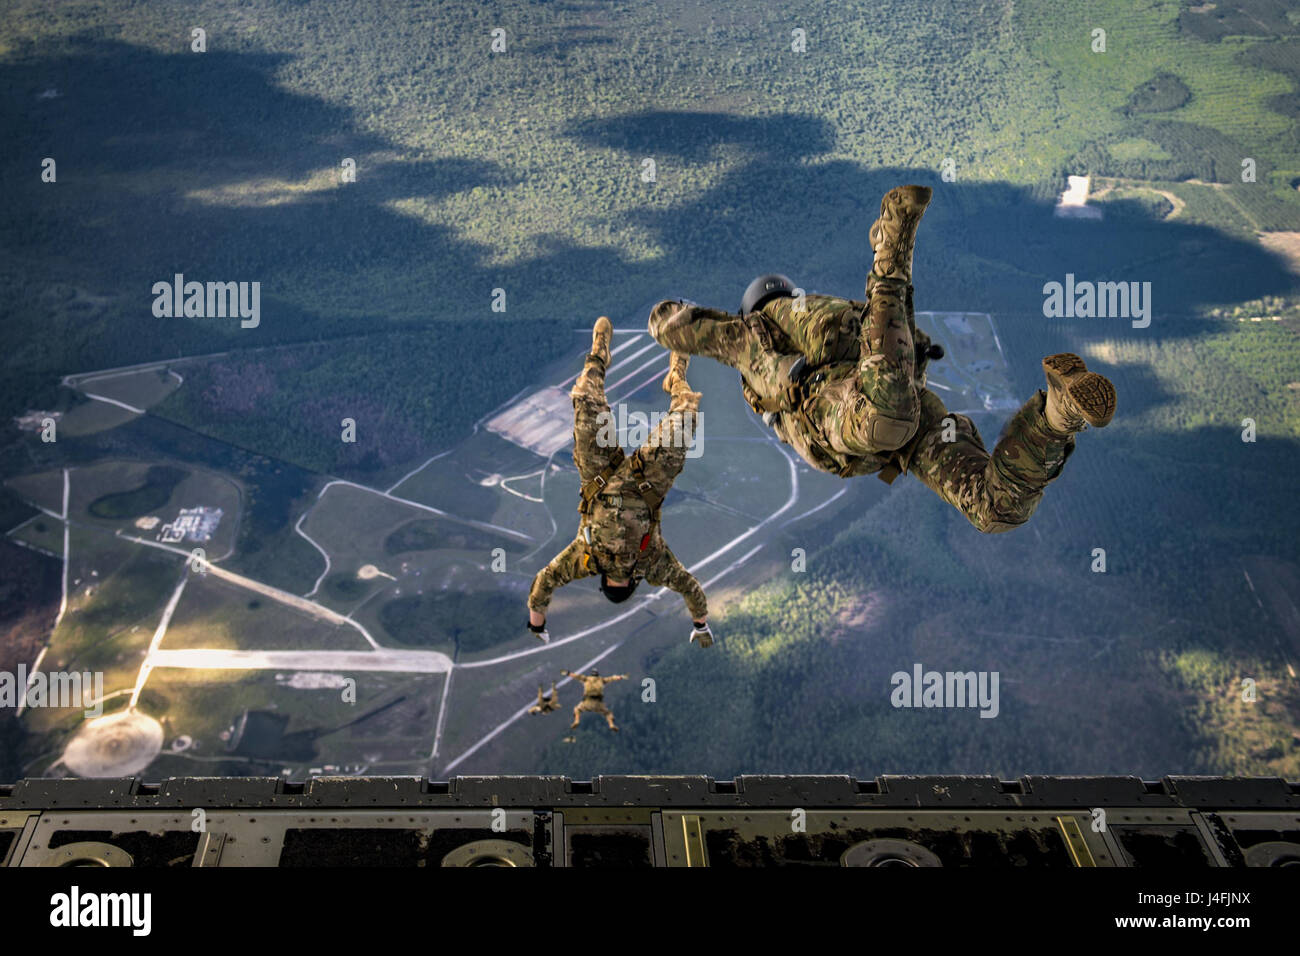 Airmen, Pararescuemen, die qualifizierte Experten in Luft-und militärischen freien Fall Operationen während Fallschirmtraining sind Stockfoto